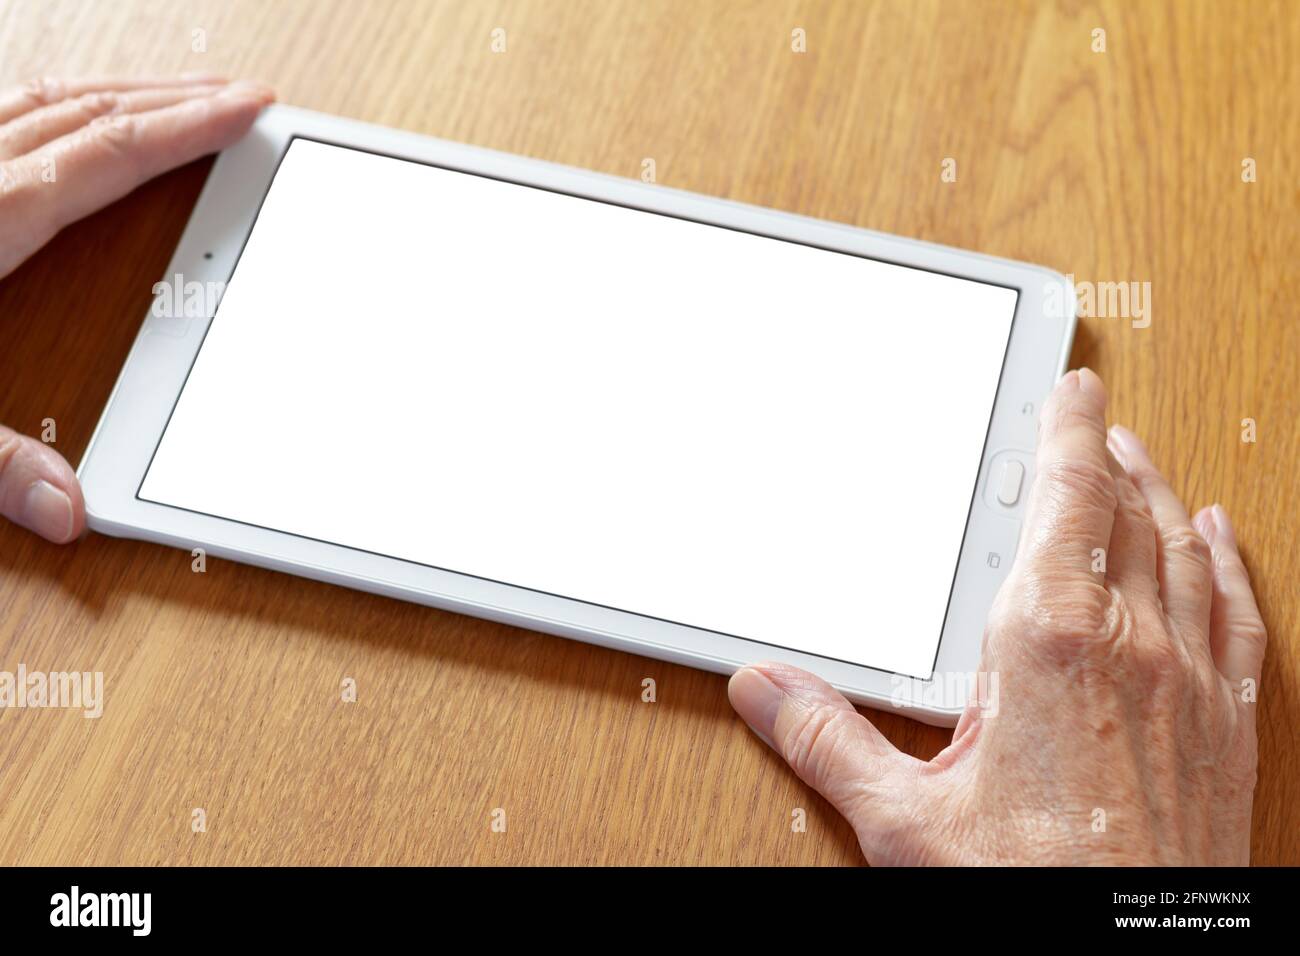 Online-Video-Telefonanruf: Hände einer alten Frau, die einen Tablet-Computer mit einem weißen Bildschirm hält. Stockfoto